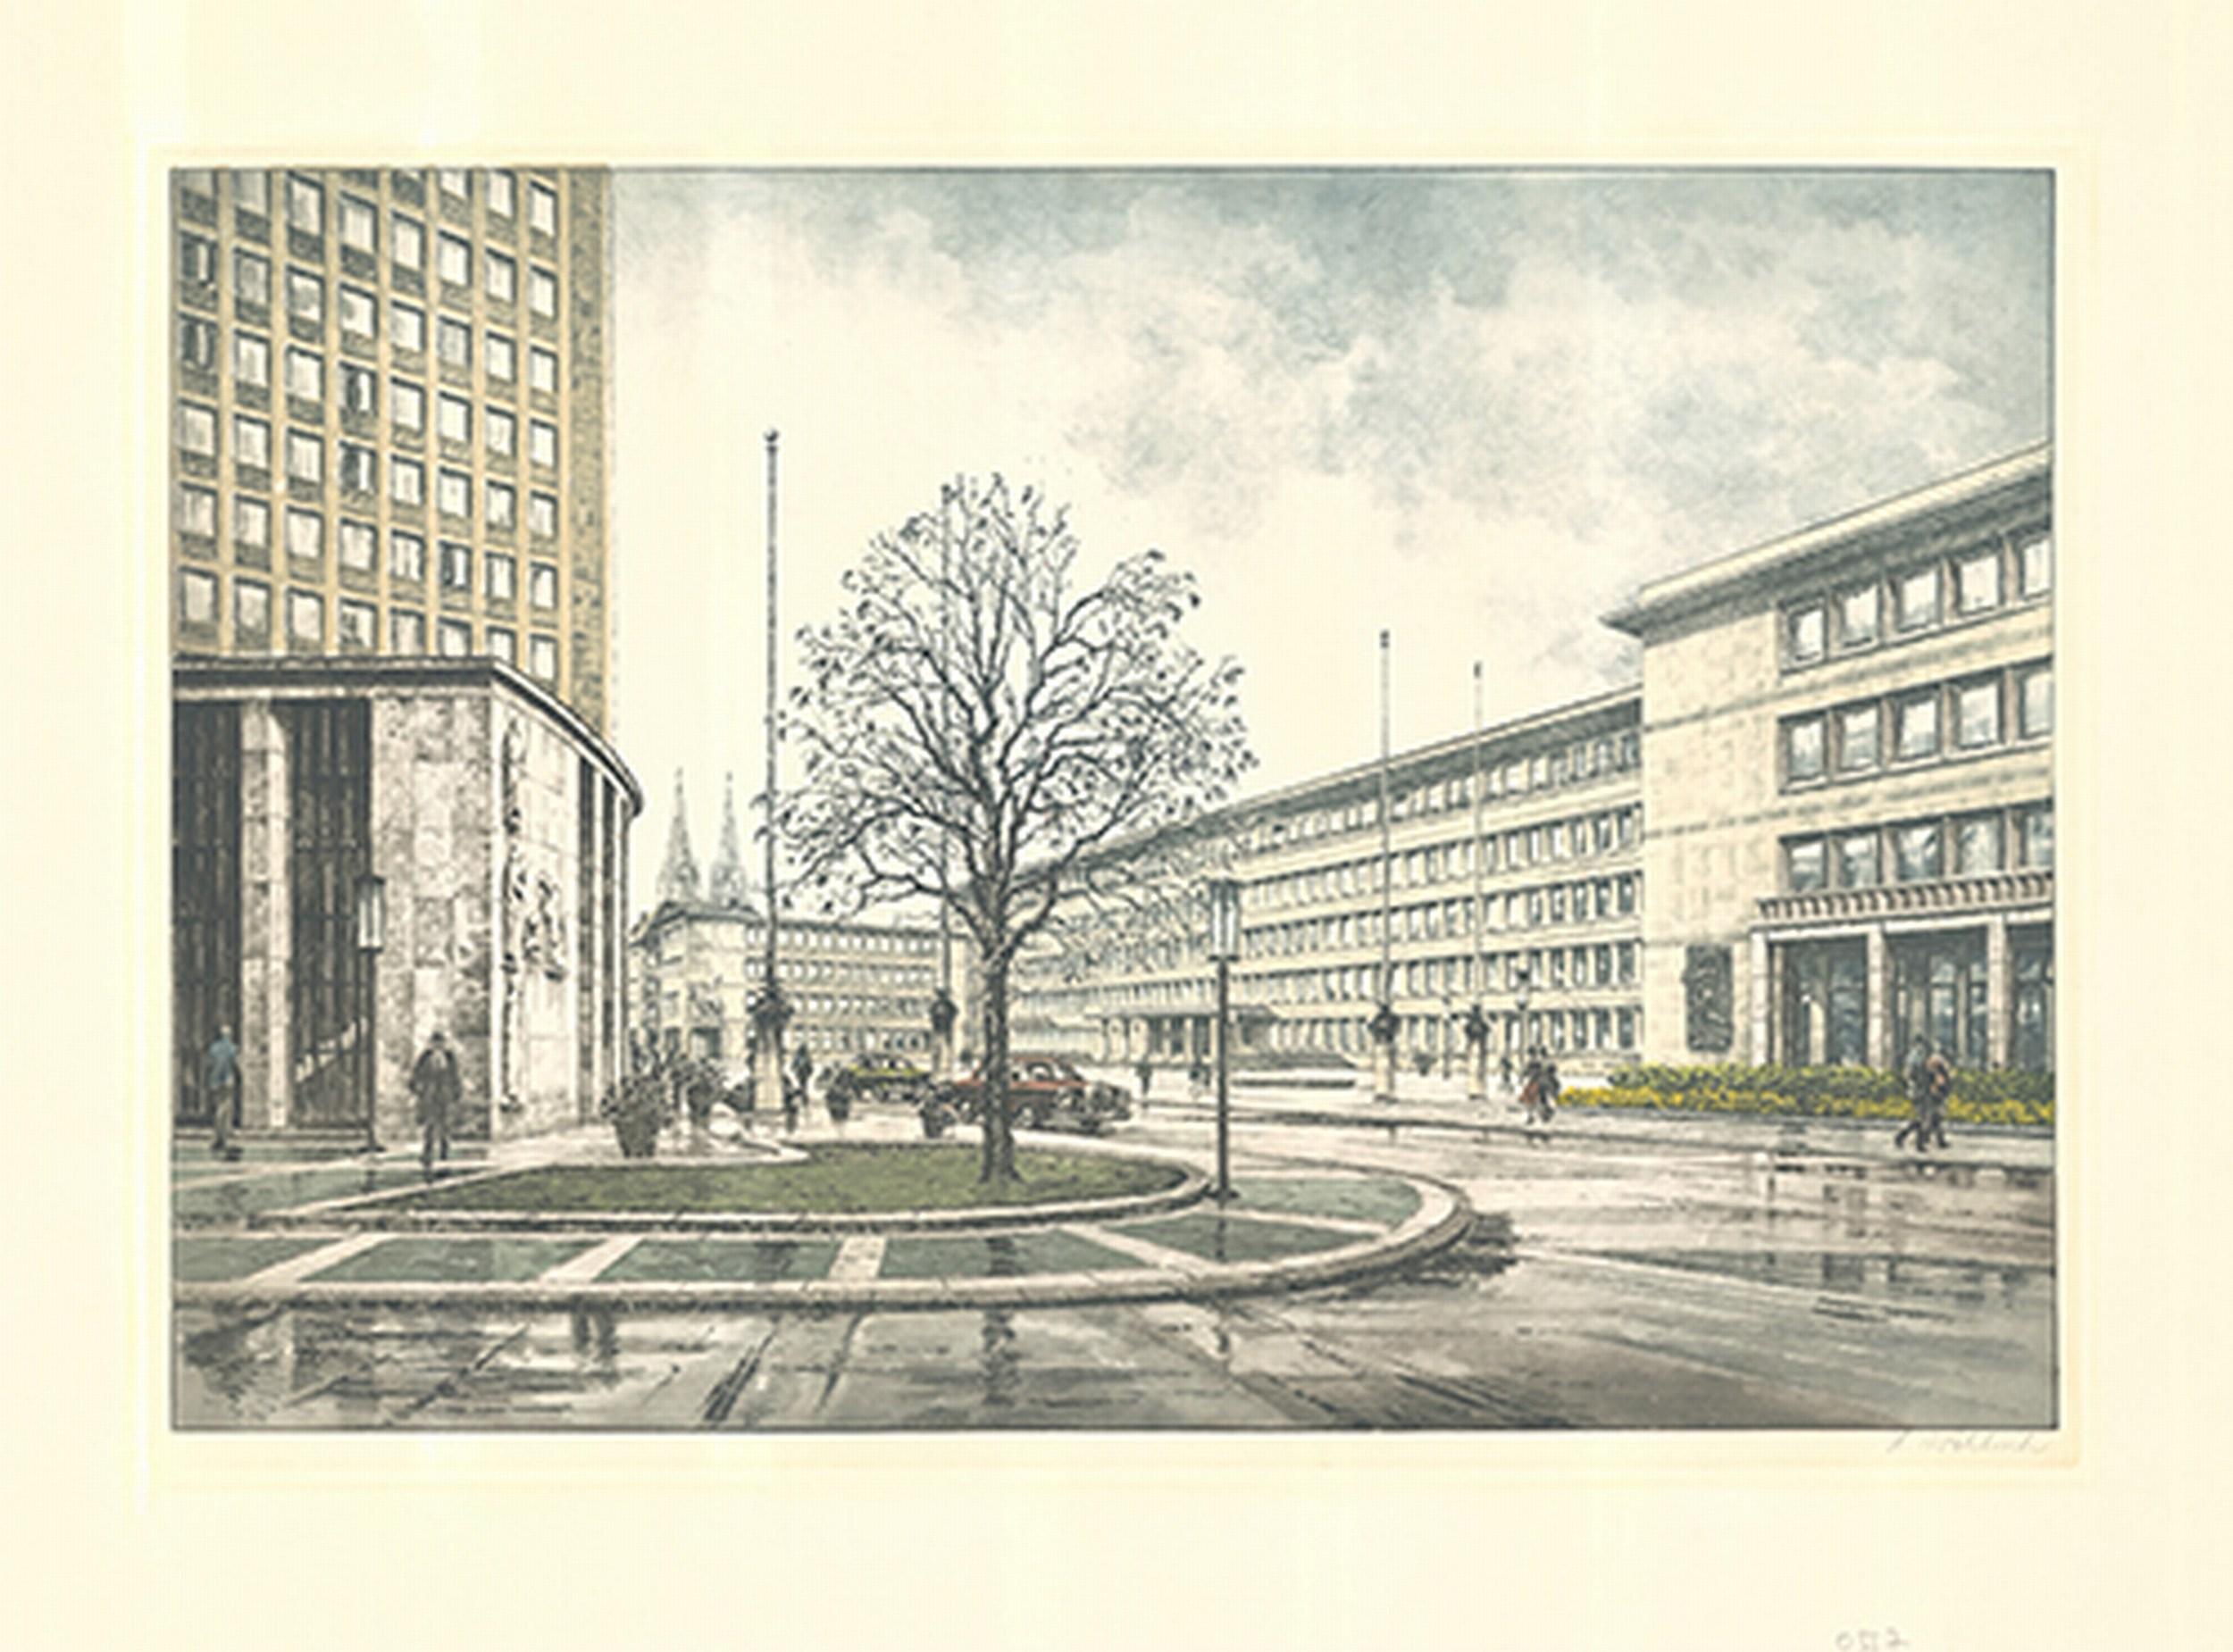 Building - Print by Heinz Wehlisch